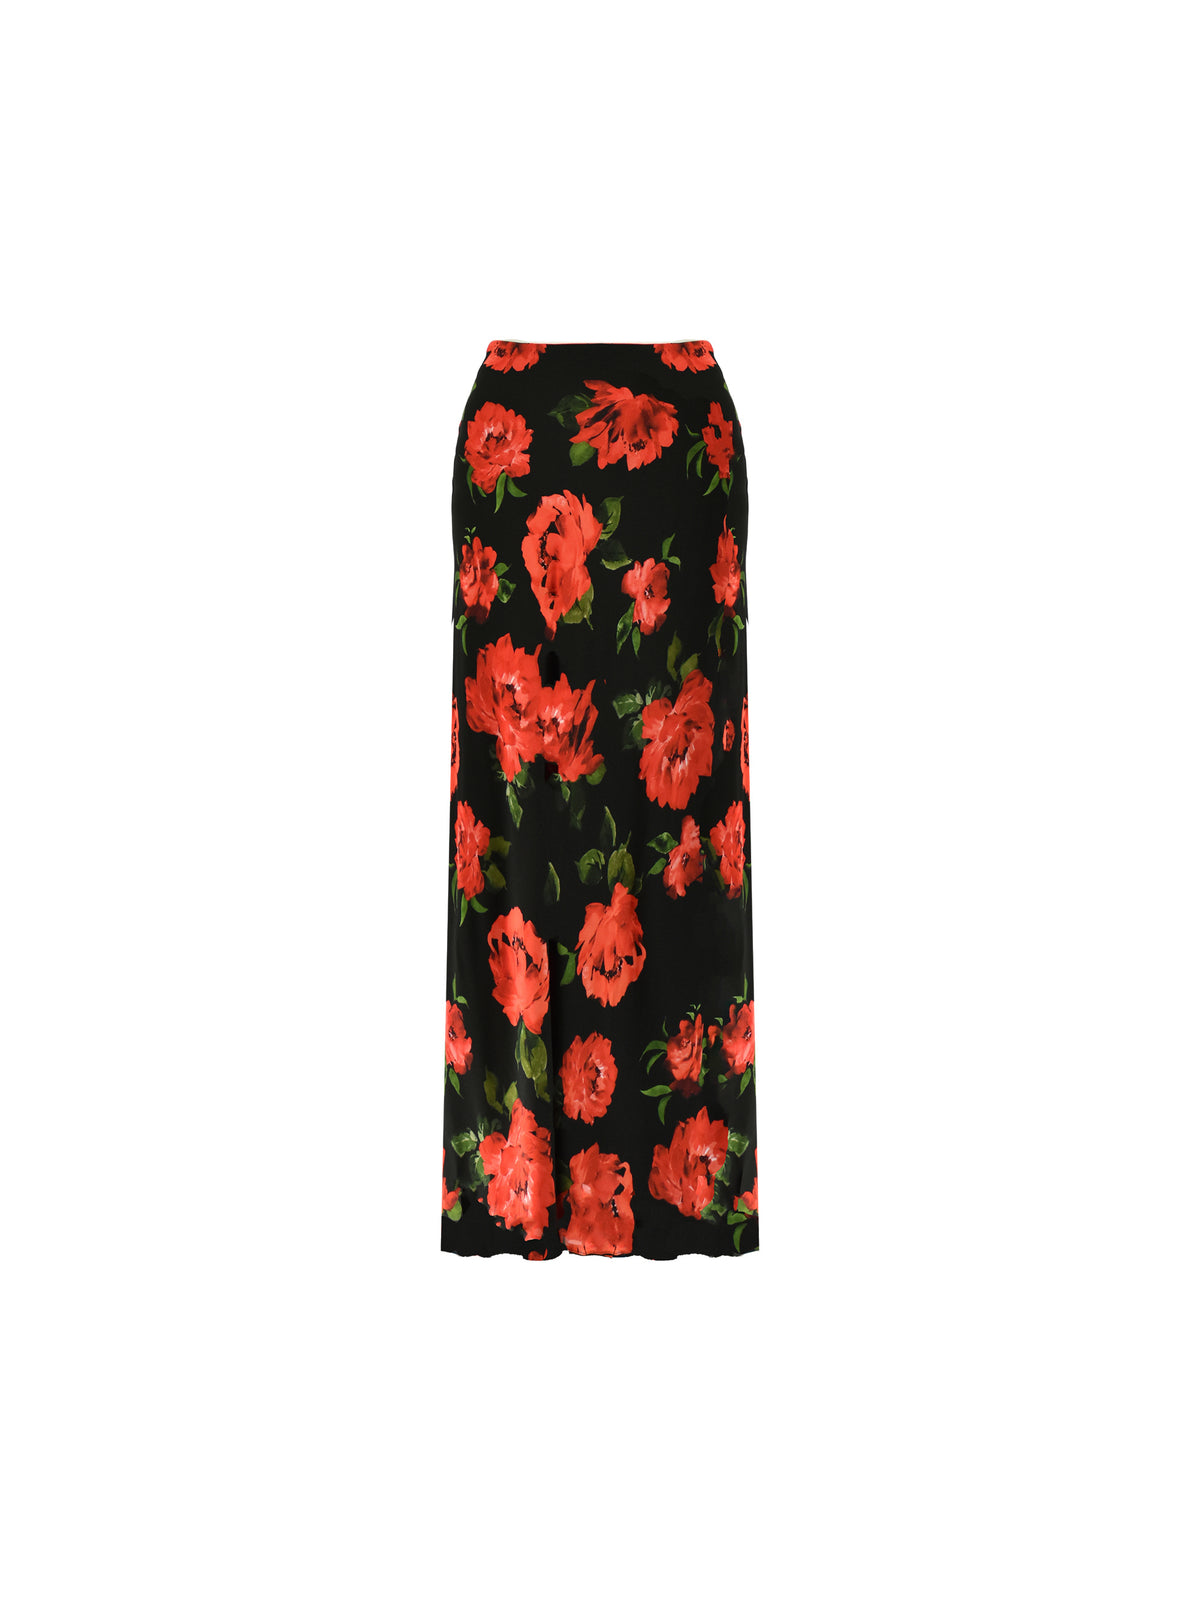 Petite Red Rose Print Skirt